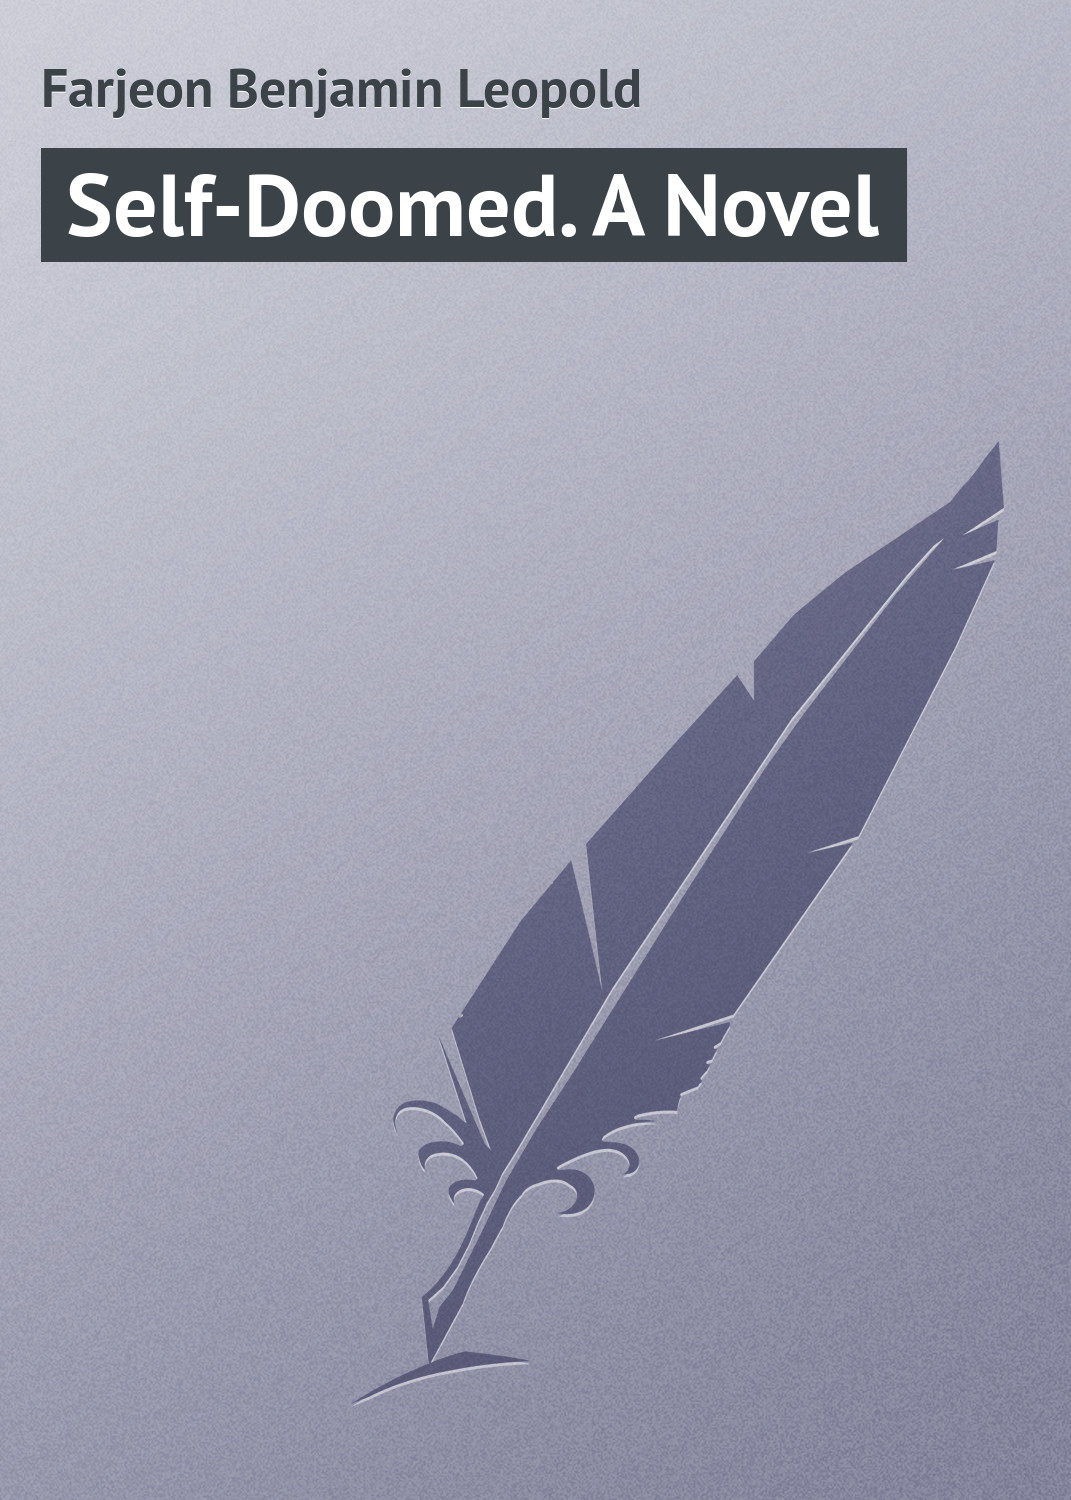 Книга Self-Doomed. A Novel из серии , созданная Benjamin Farjeon, может относится к жанру Зарубежная классика, Иностранные языки. Стоимость электронной книги Self-Doomed. A Novel с идентификатором 23159483 составляет 5.99 руб.